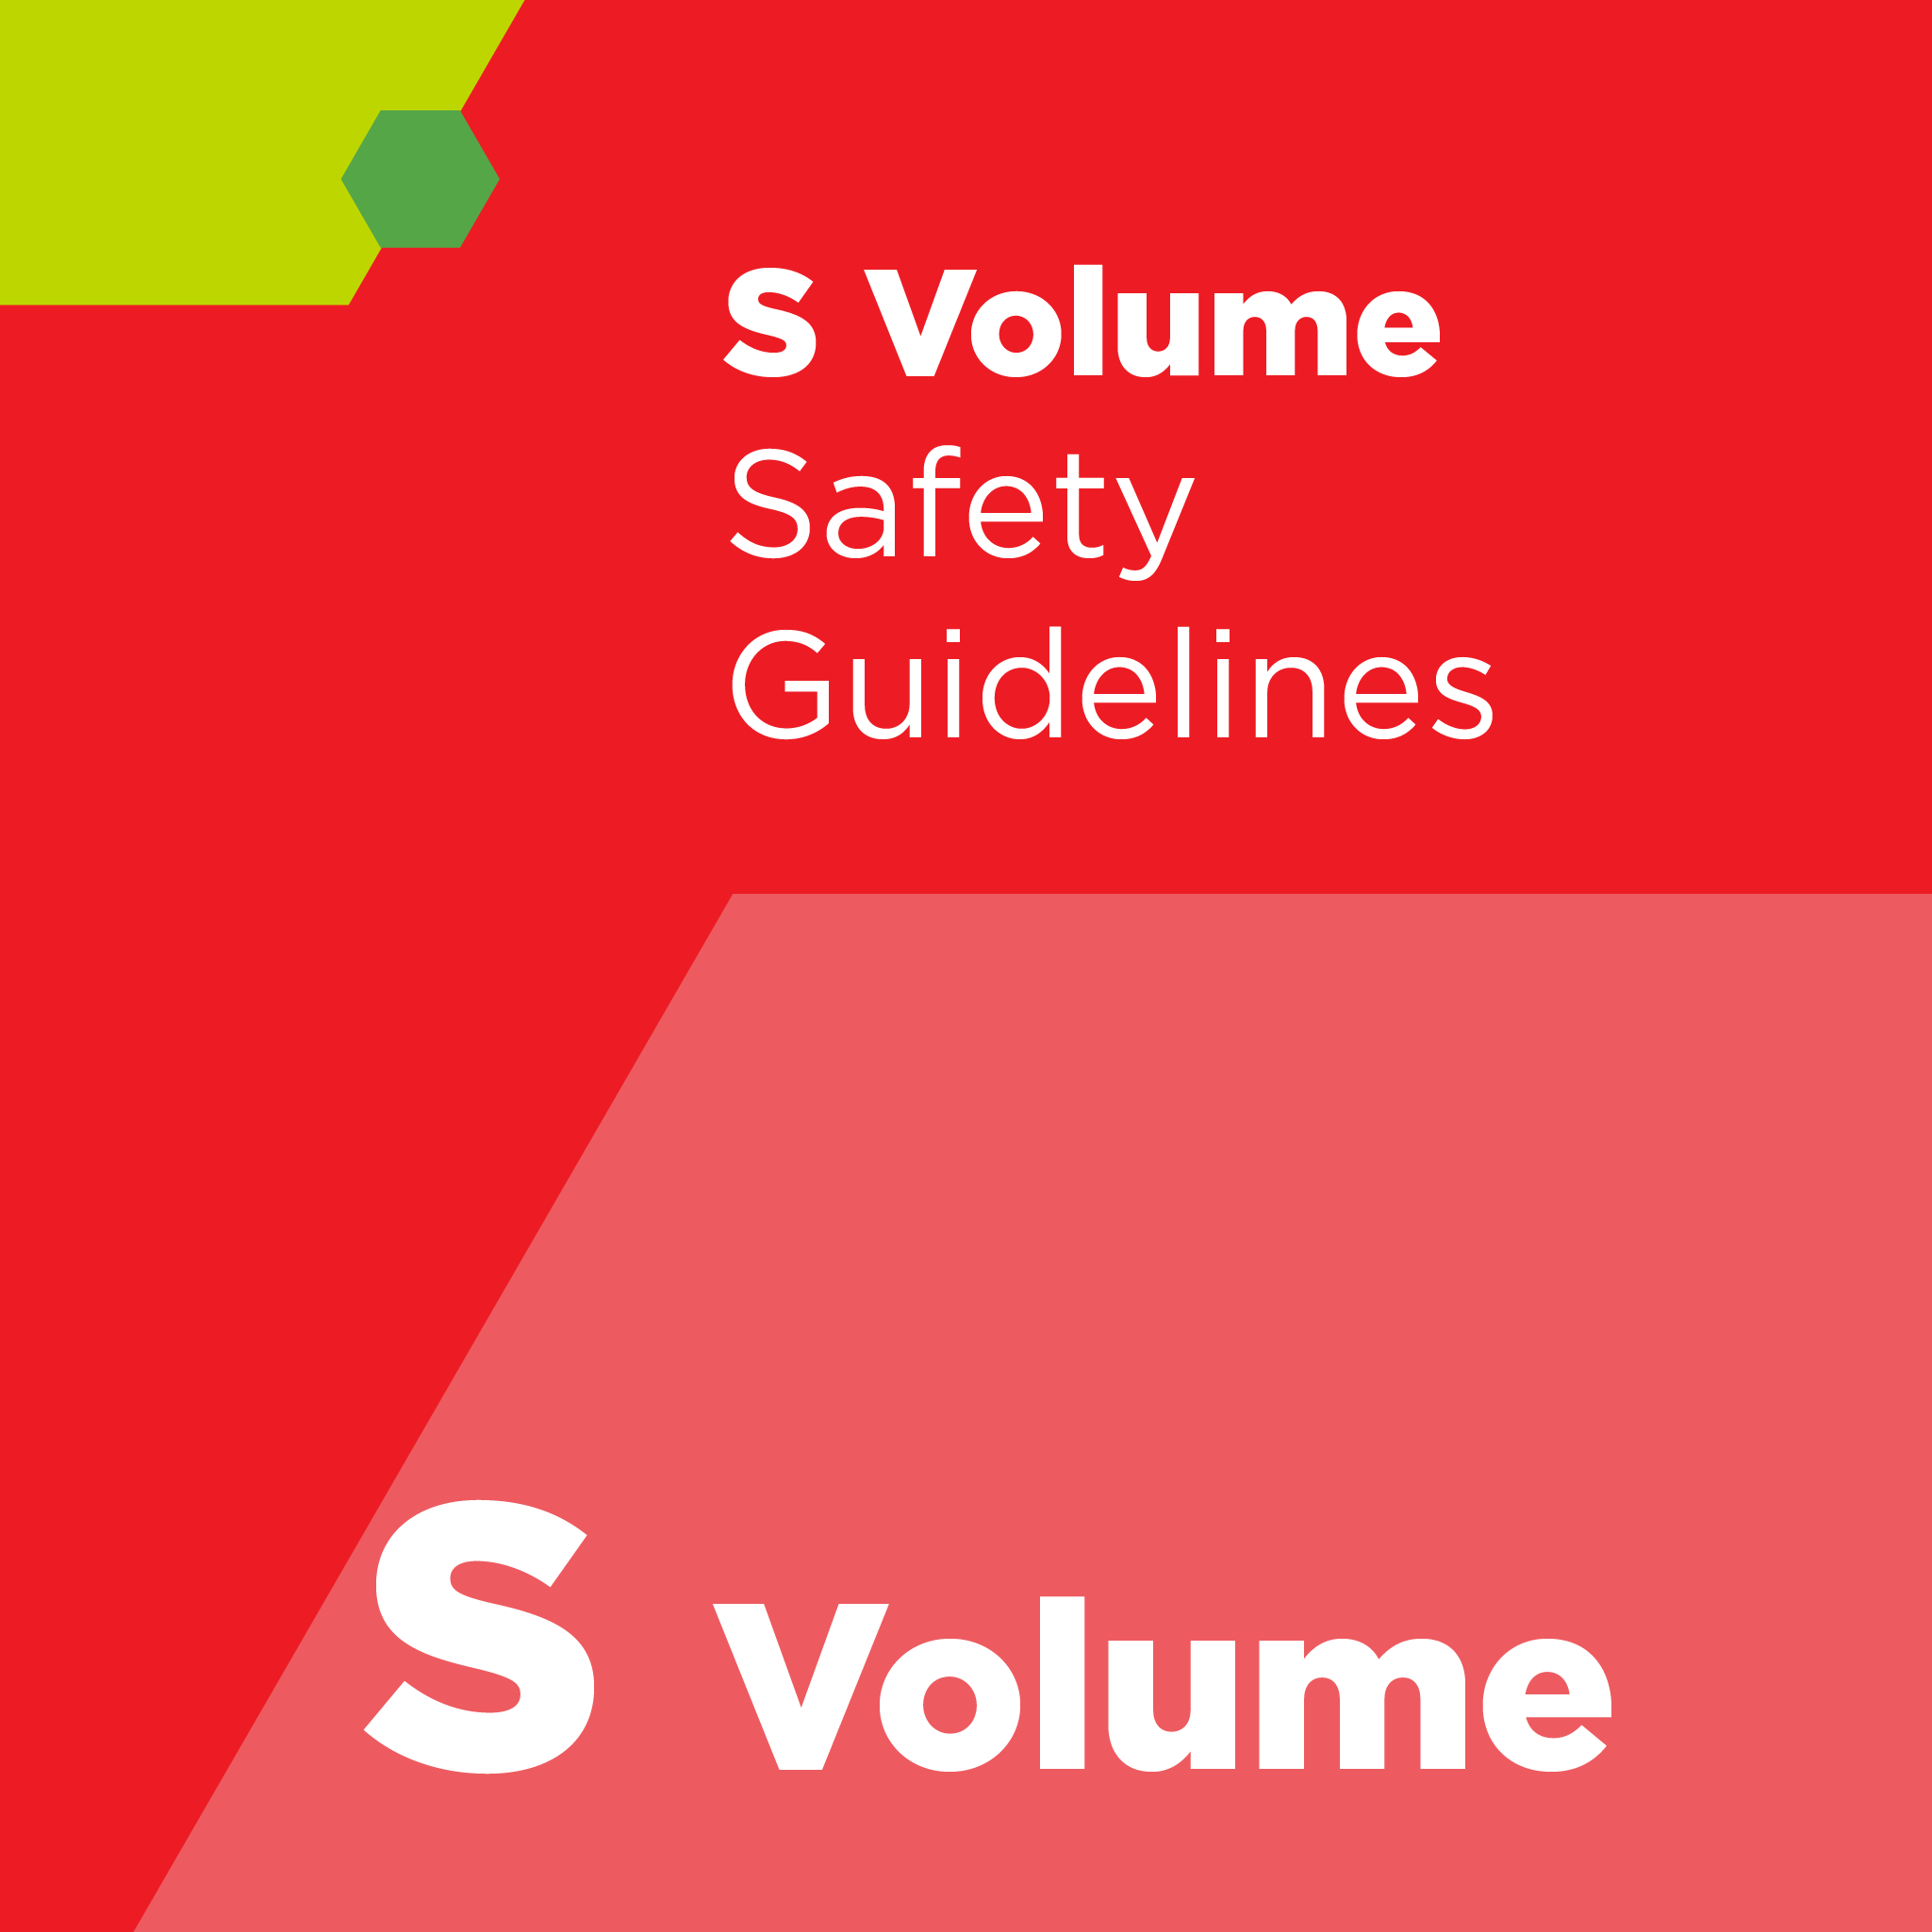 S02700 - SEMI S27 - 環境，健康，安全（ESH）評価報告書の内容に関する安全ガイドライン